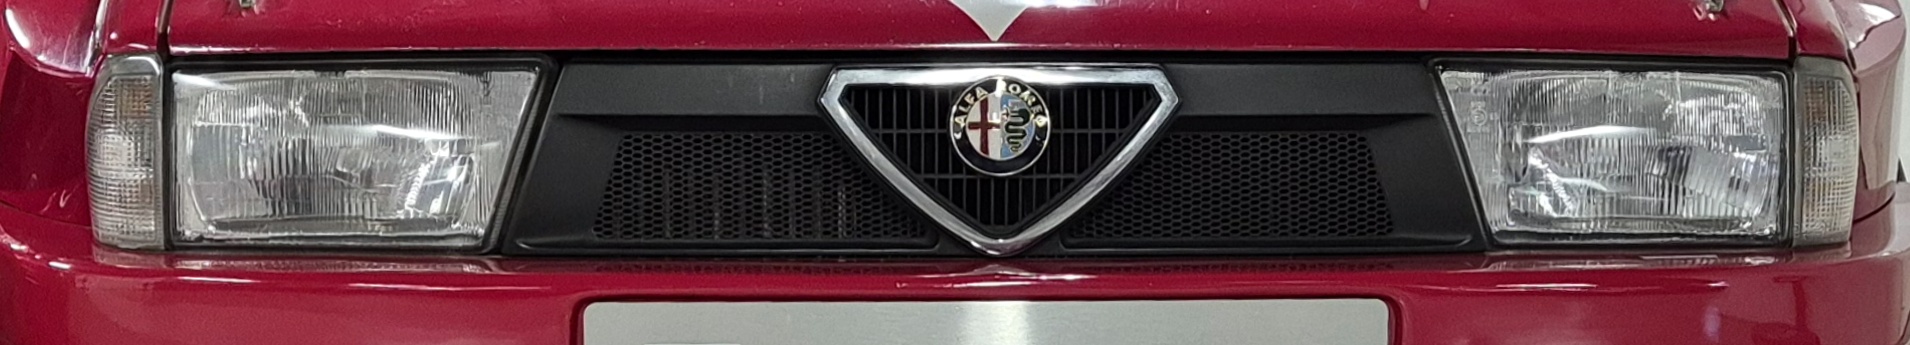 Alfaclub Alfa Romeo 75 Register